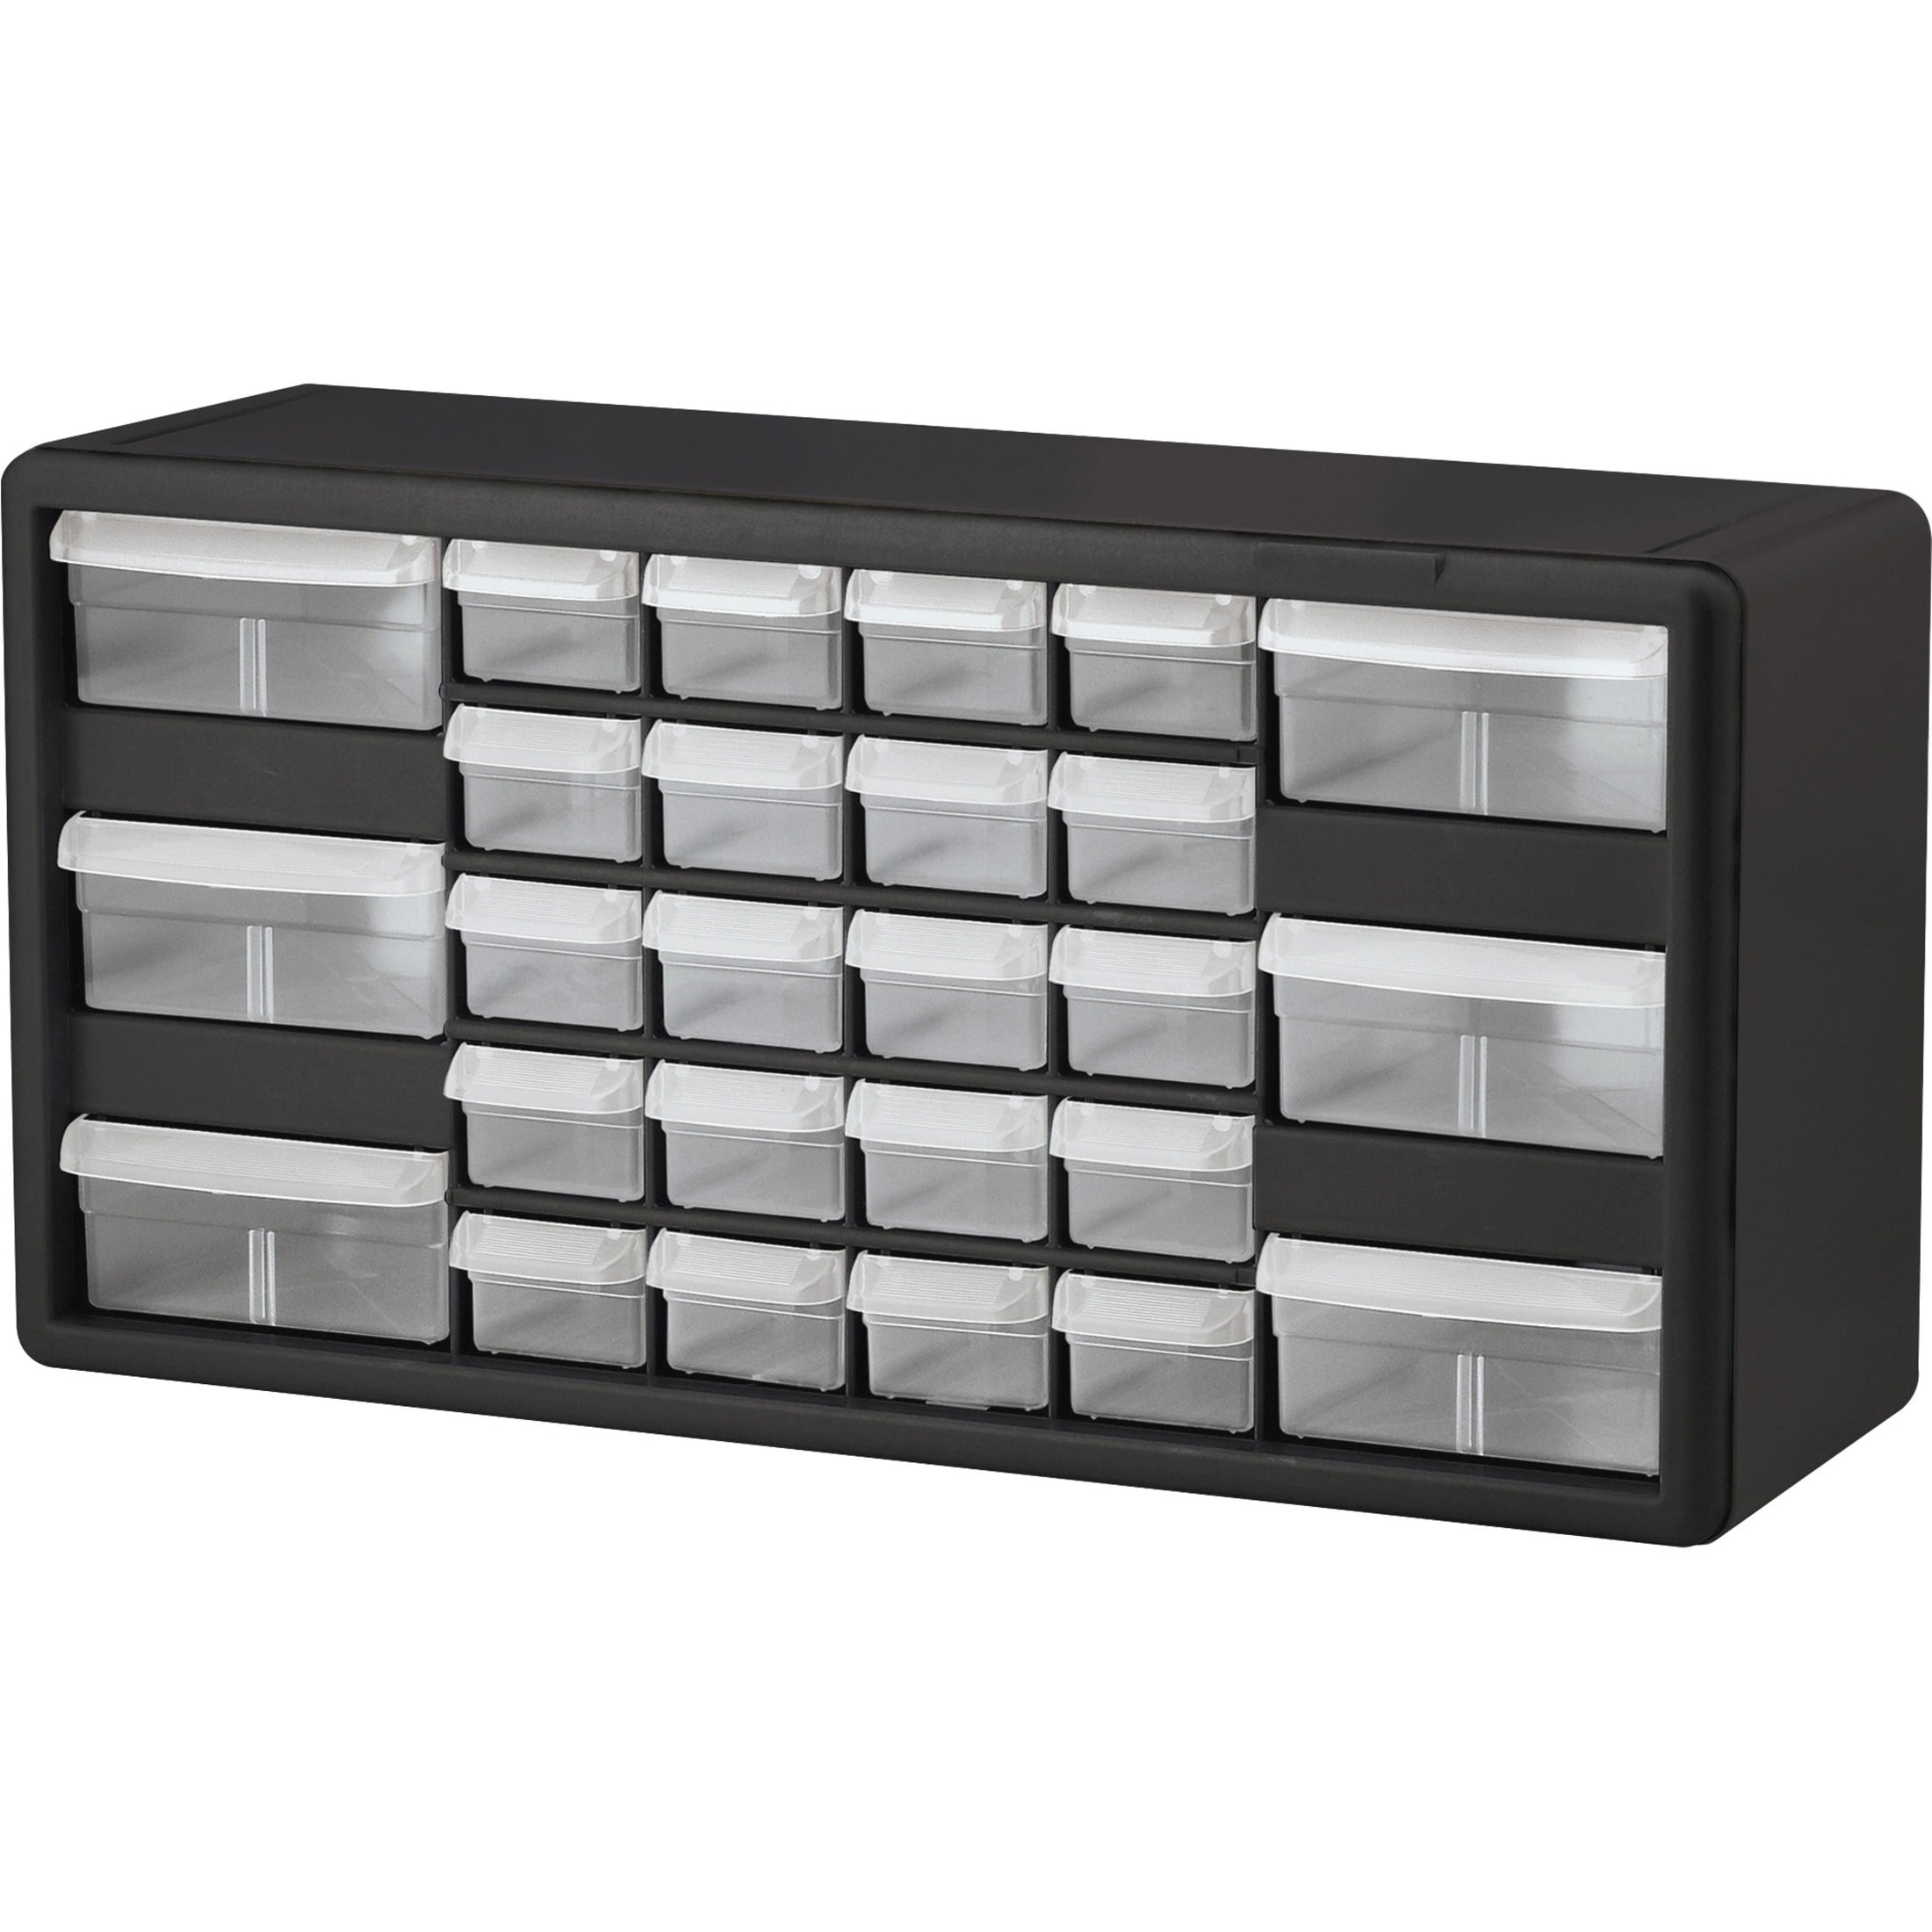 Cabinet 44 Plastic Drawer Storage Bins Organizer Home Garage Craft Hobby Boxes 